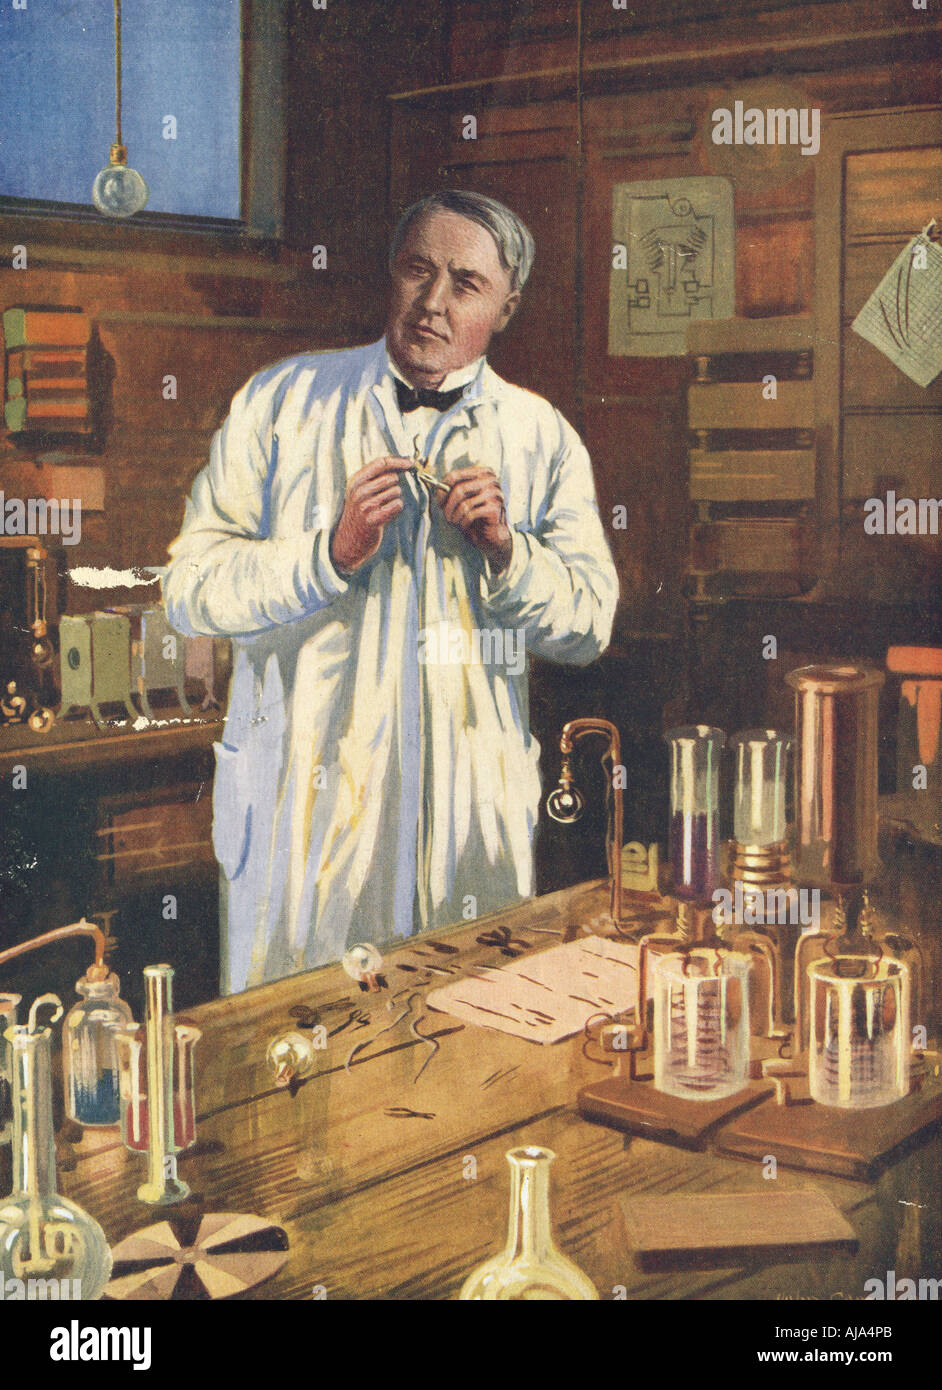 Thomas Edison, inventeur américain, dans son laboratoire, Menlo Park, New Jersey, USA, 1870 (1920). Artiste : Inconnu Banque D'Images